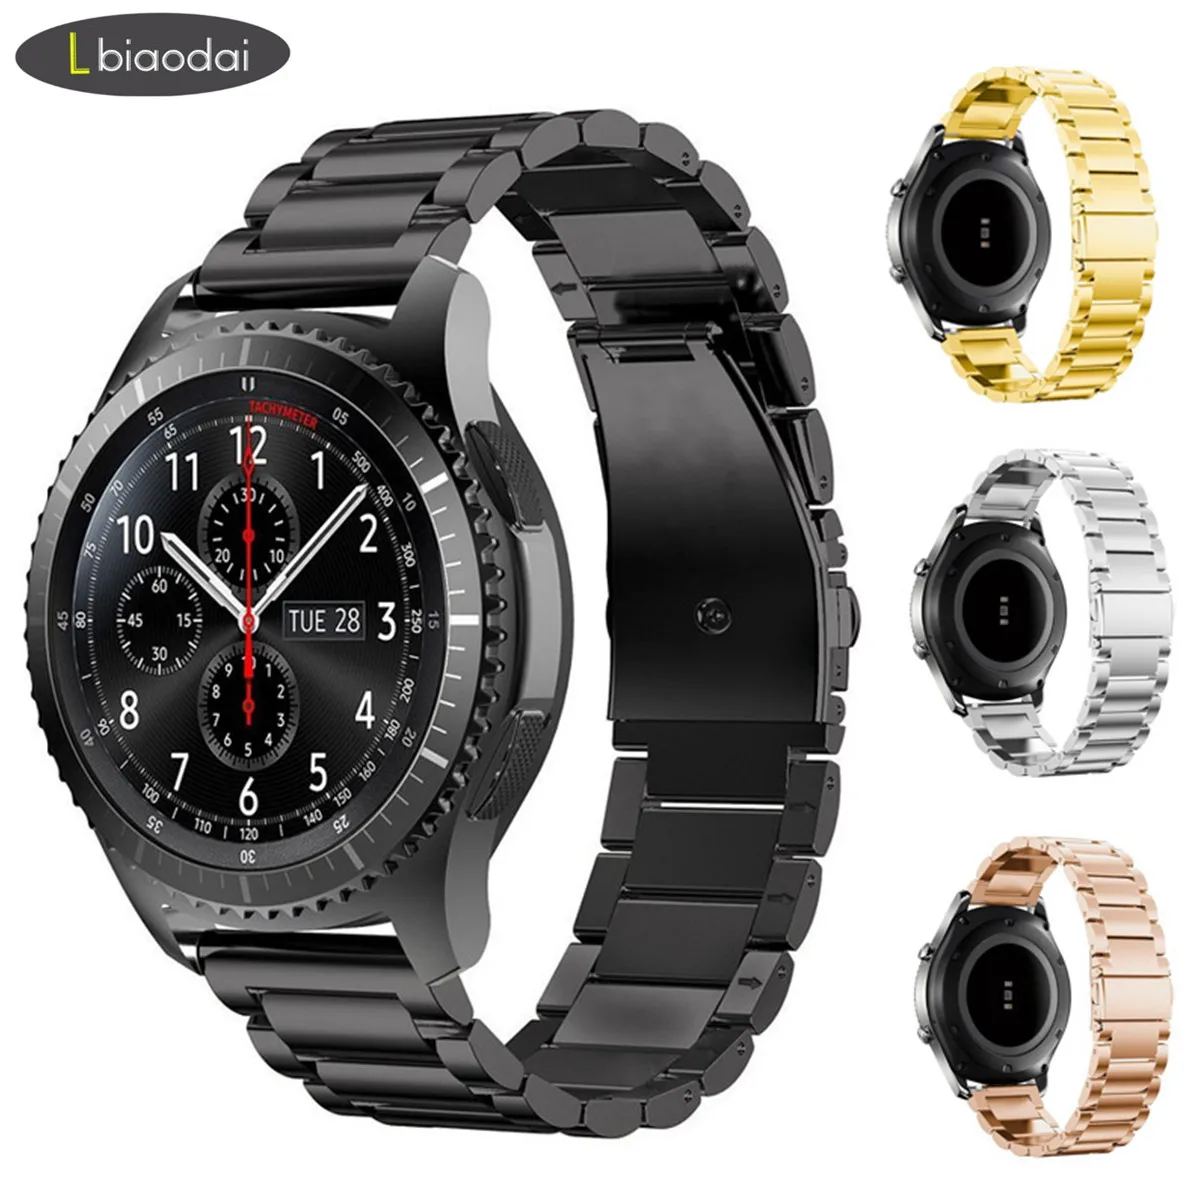 

Ремешок из нержавеющей стали для Galaxy watch 46 мм 42 мм, браслет для Active Samsung Gear S3 frontier/S2/Sport Huawei Watch GT S 3 46, 18/20/22 мм